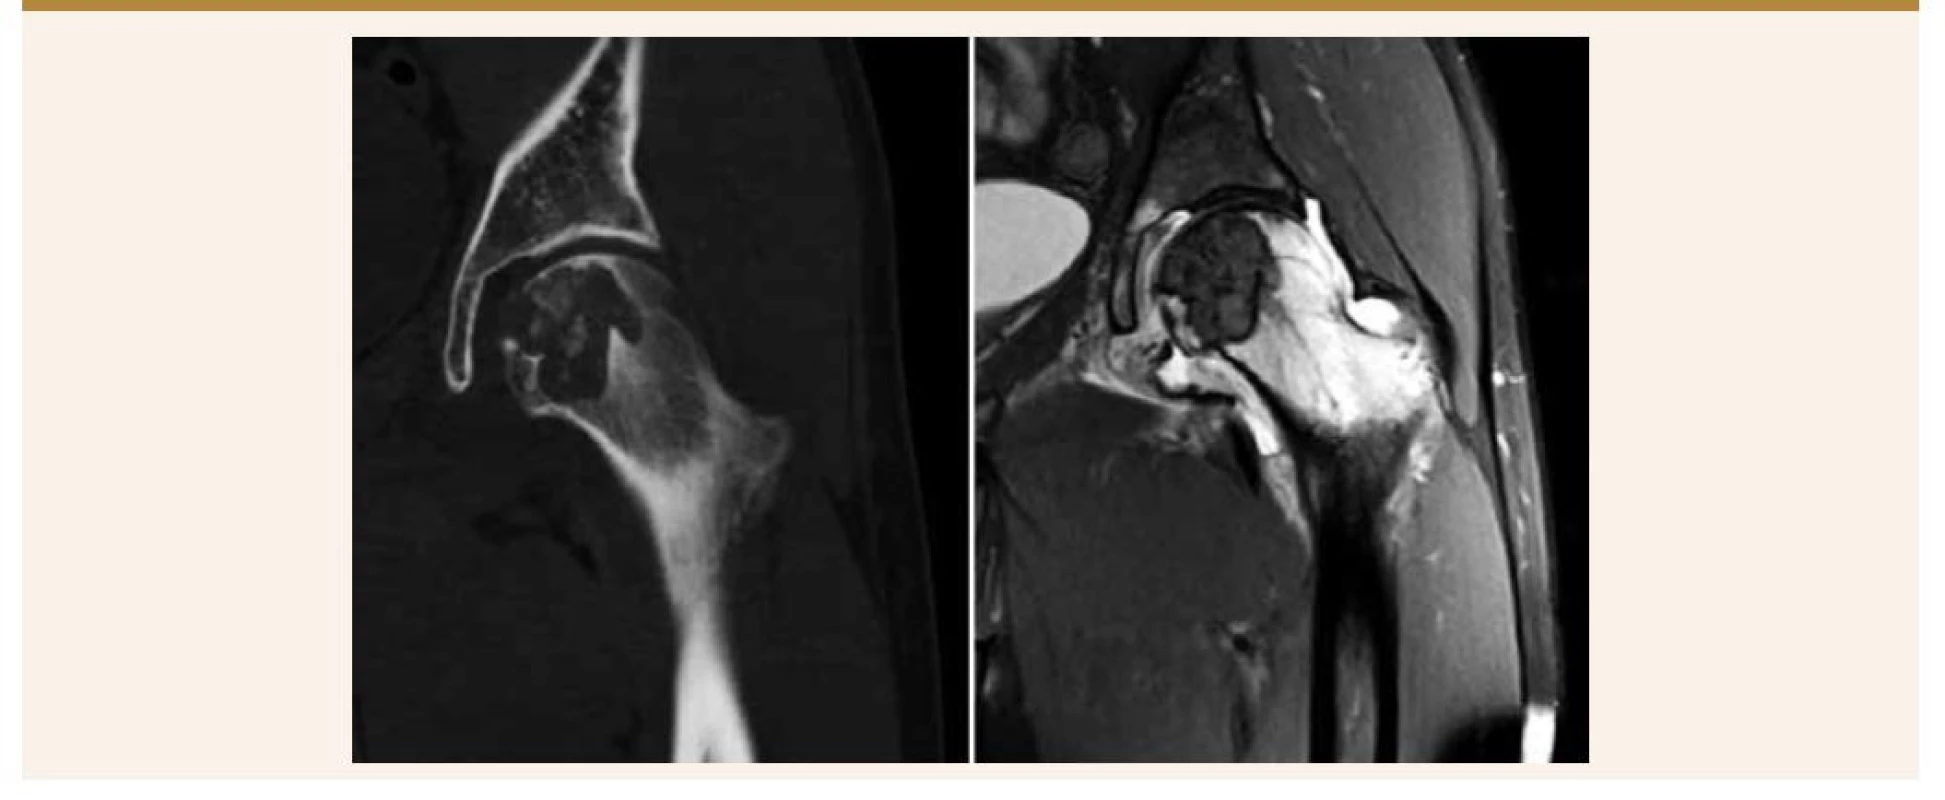 Vľavo: CT-snímka ukazuje lytické ložisko, dobre ohraničené, centrálne prítomné kalcifikácie. Vpravo: MRI so
zápalovými zmenami v bedrovom kĺbe a výrazným kostným edémom krčku stehennej kosti.